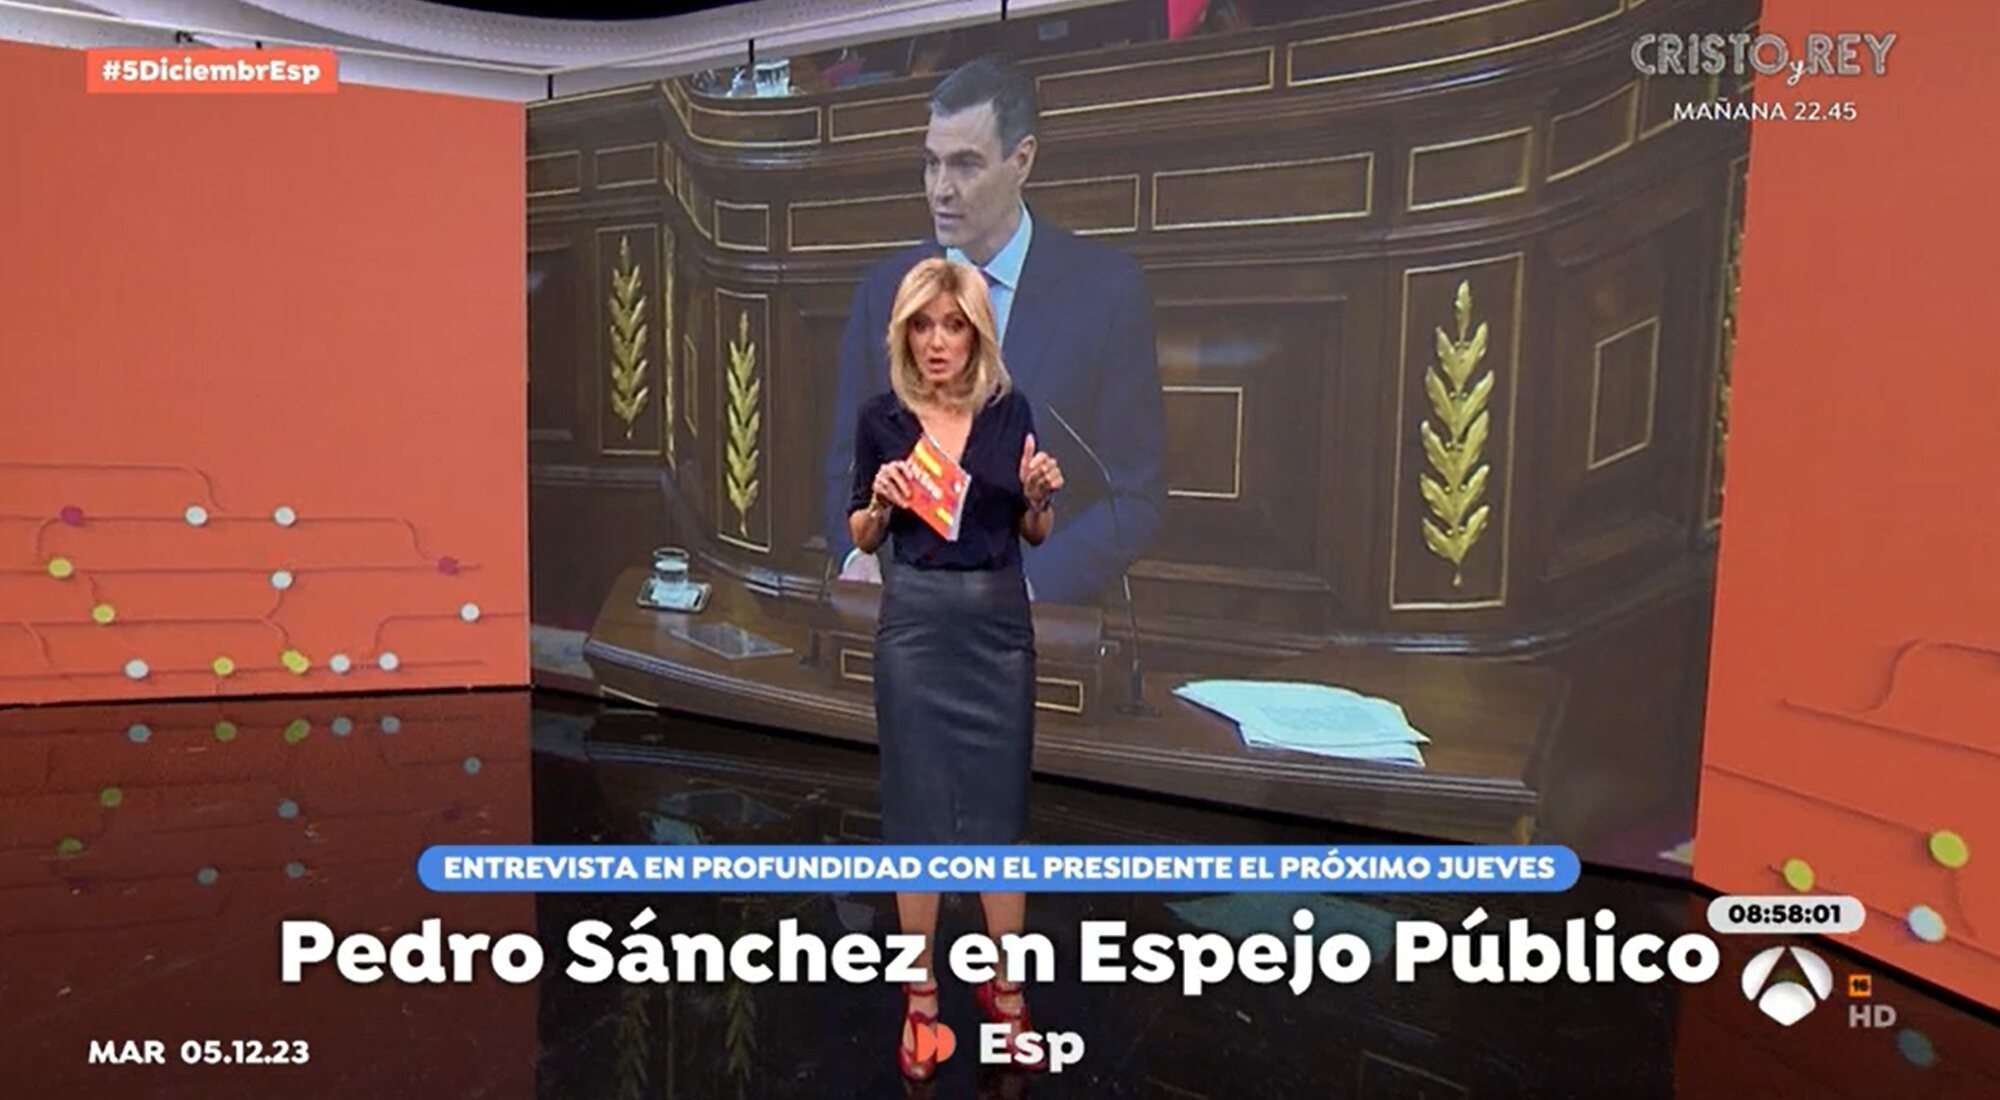 Susanna Griso anuncia la visita de Pedro Sánchez a 'Espejo público'